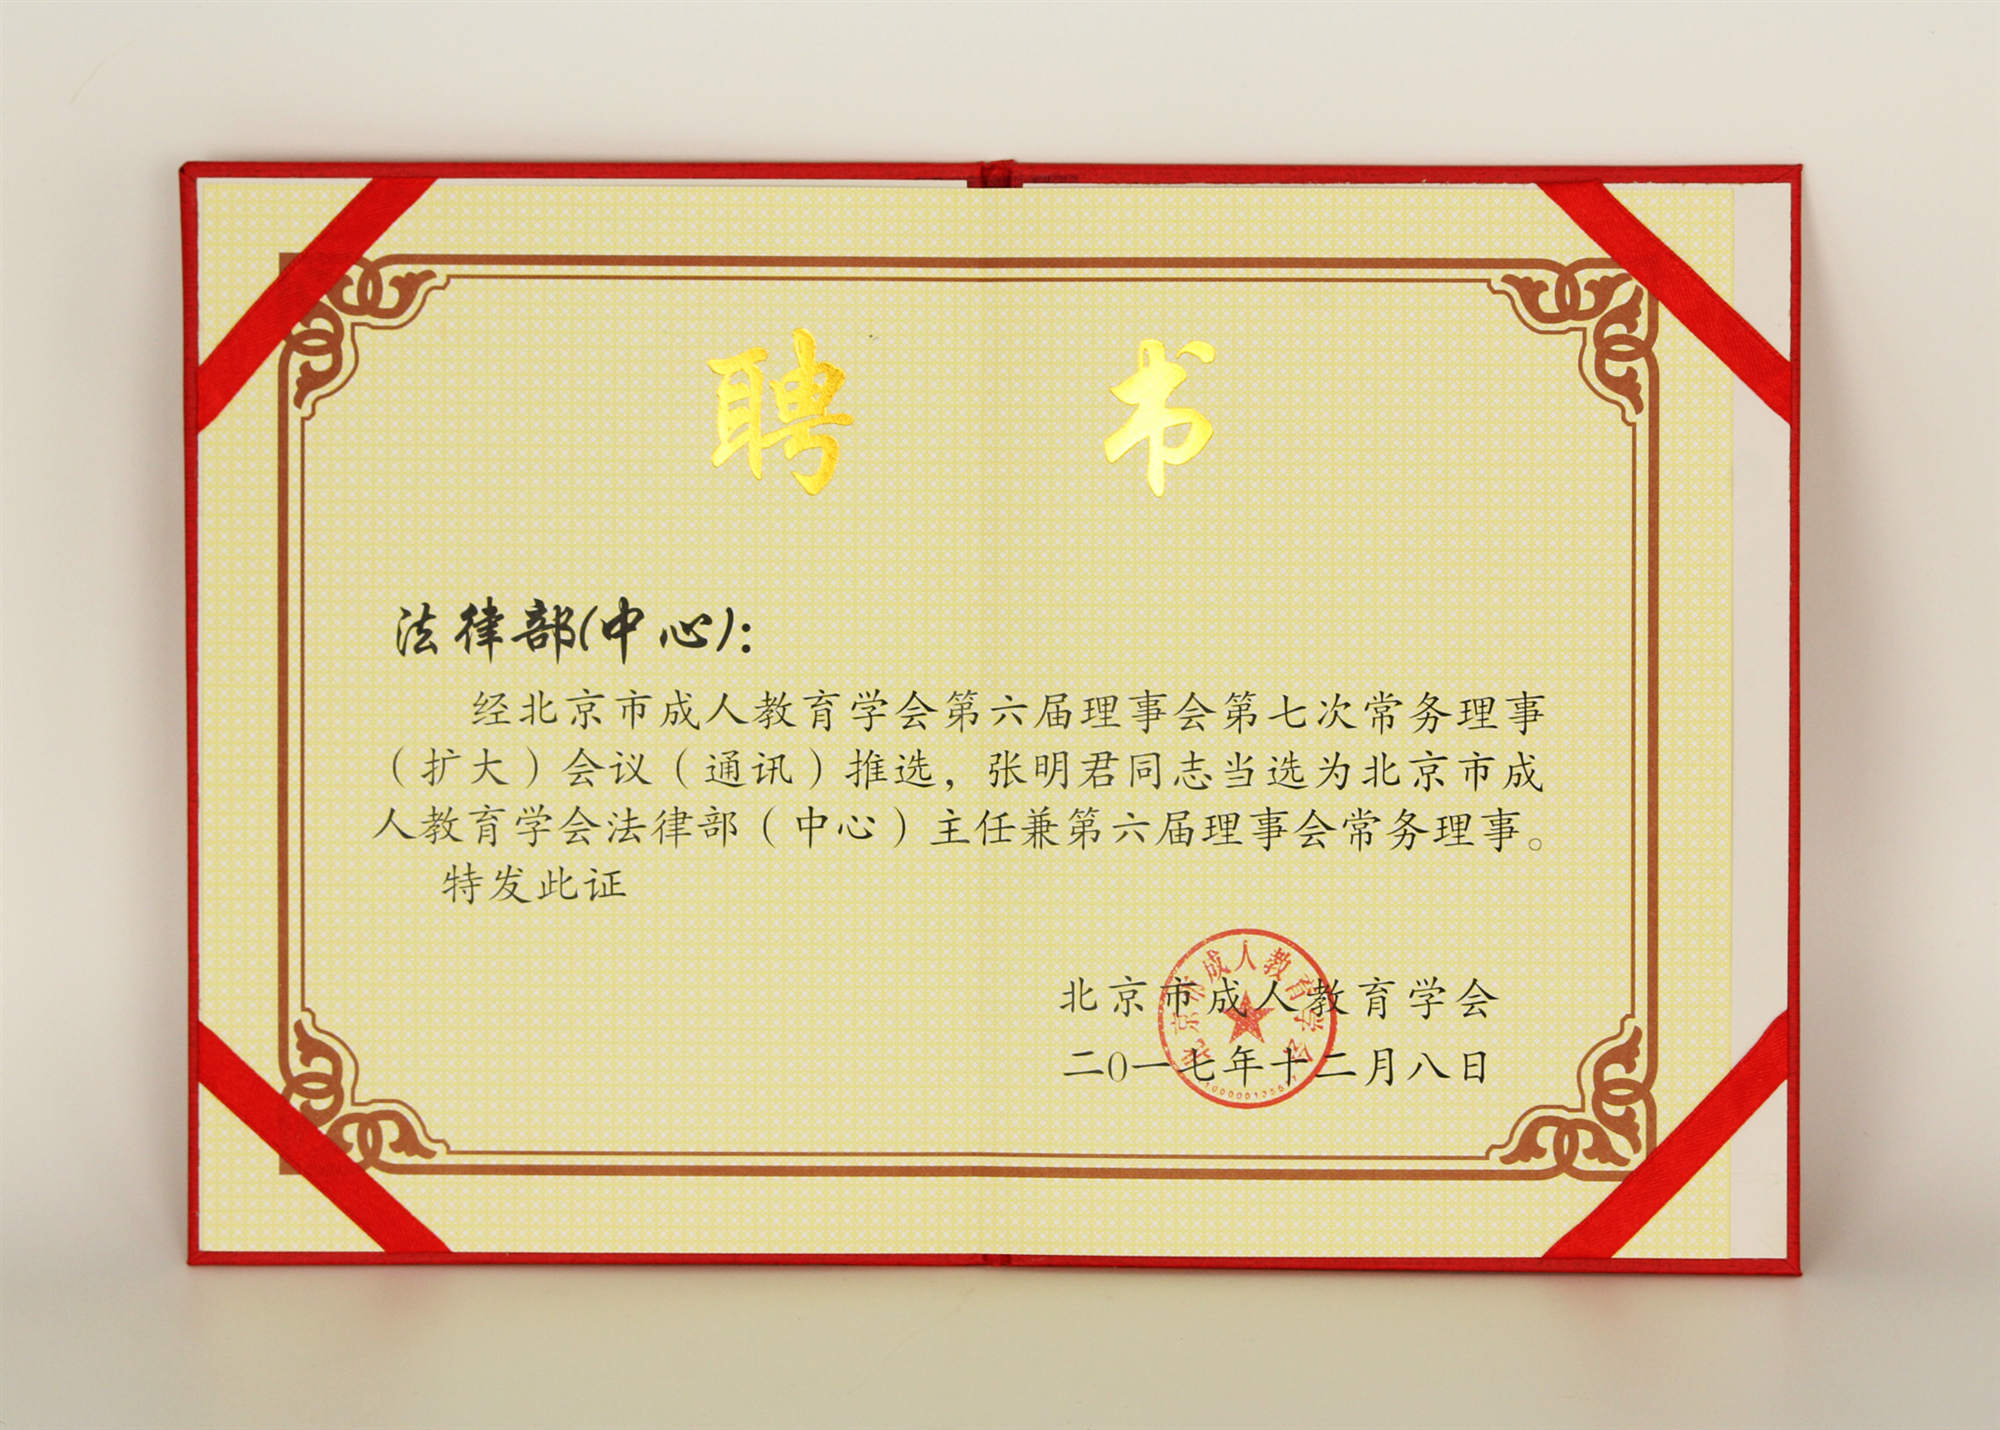 2017年12月张明君律师当选为北京市成人教育学会法律部主任兼第六届理事会常务理事